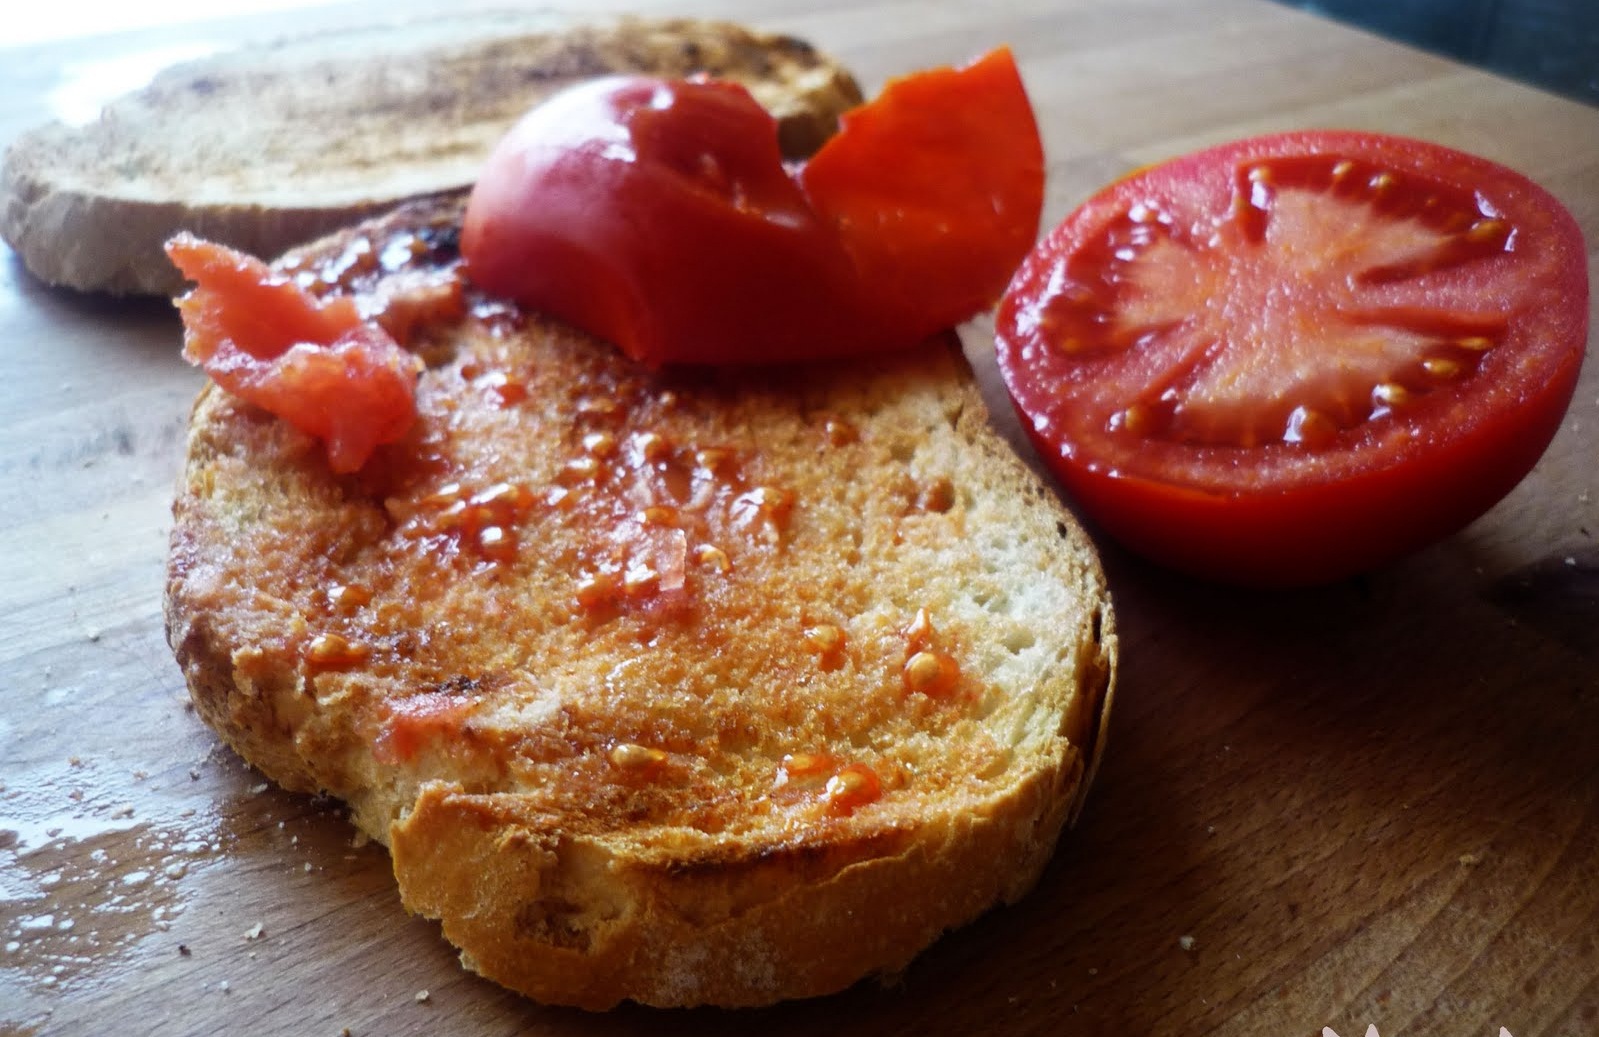 🍴: Pa amb tomaquet. Pan con tomate a la catalana.